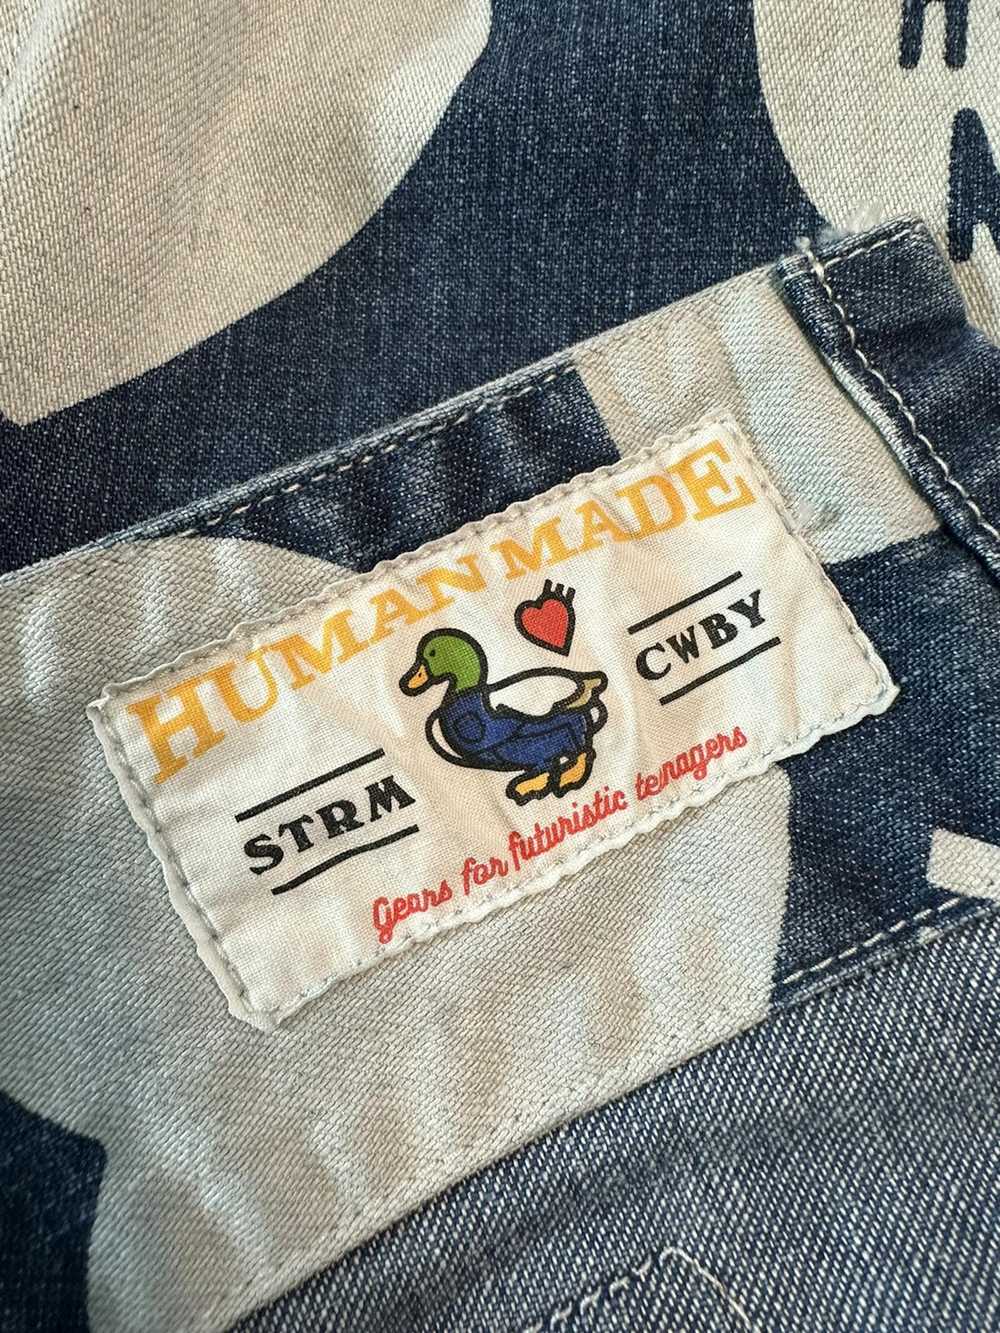 Human Made Human Made Denim overshirt - image 4